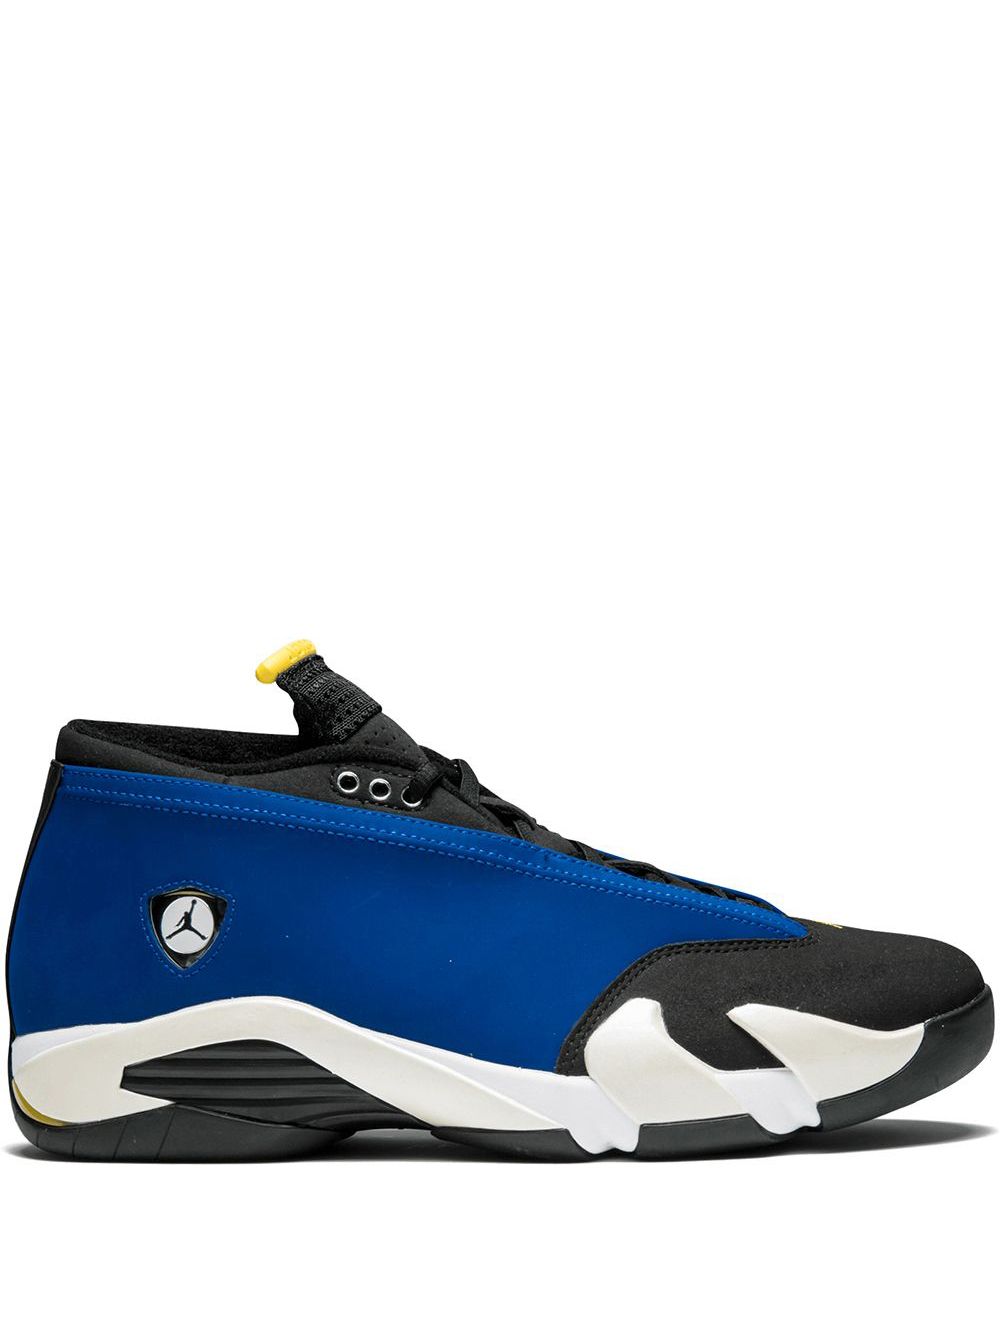 Jordan Air Jordan 14 Retro Low "Laney" sneakers - Blue